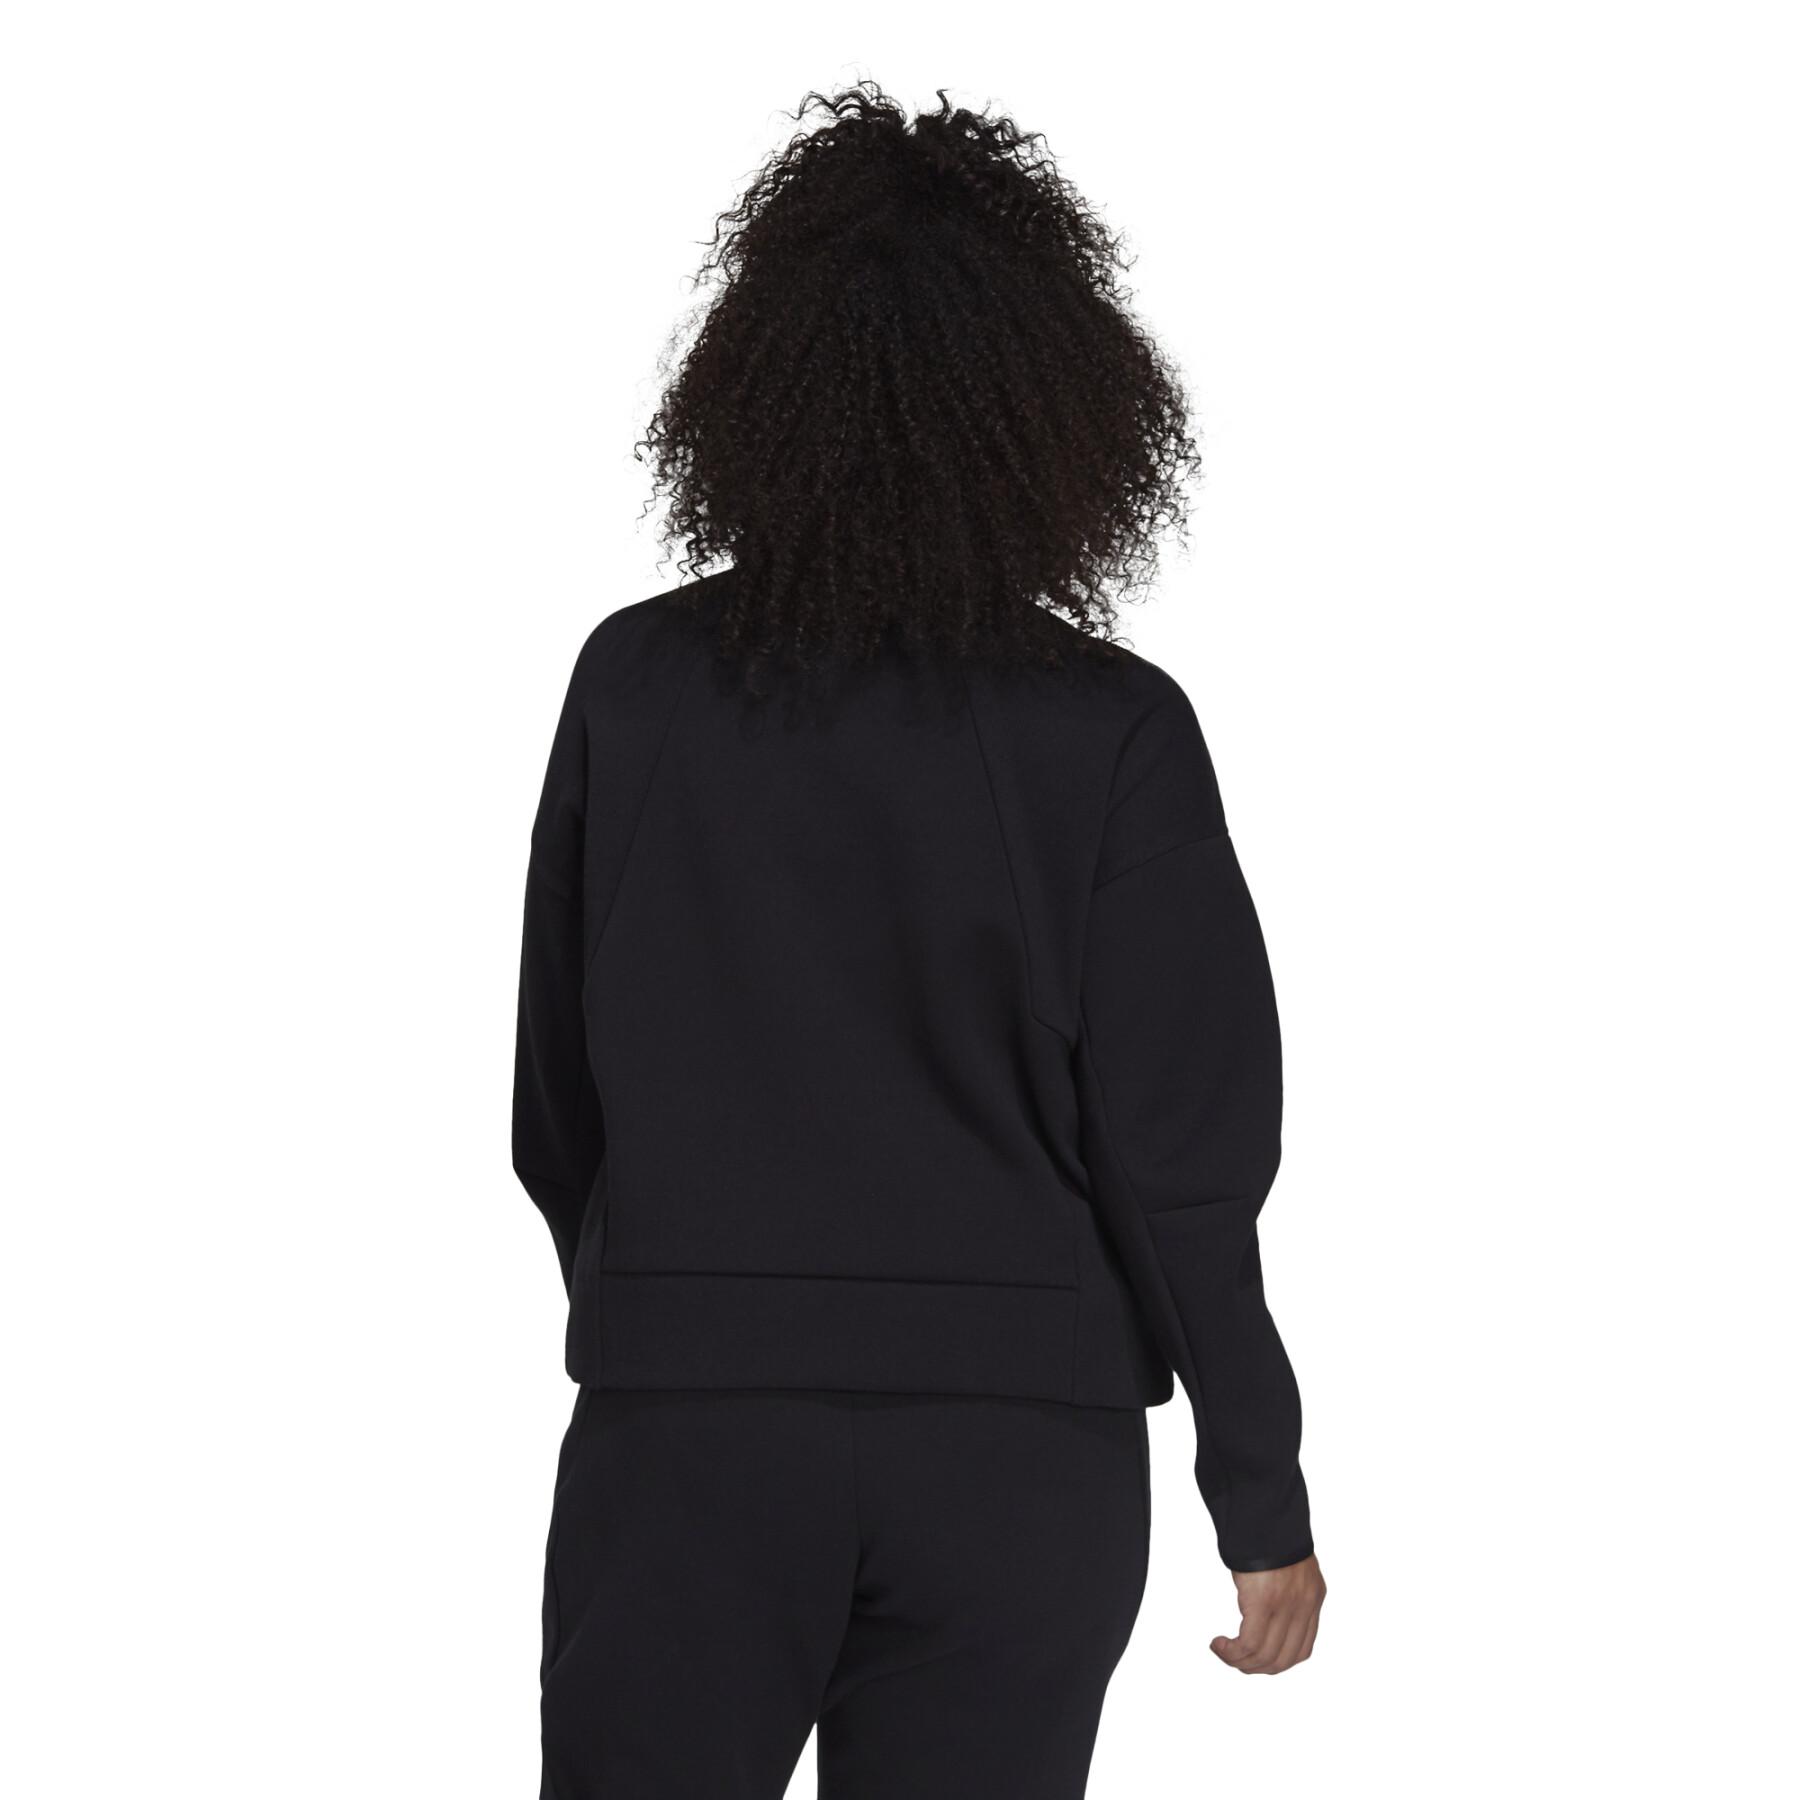 Jacke für Frauen in großen Größen adidas Z.N.E. Sportswear